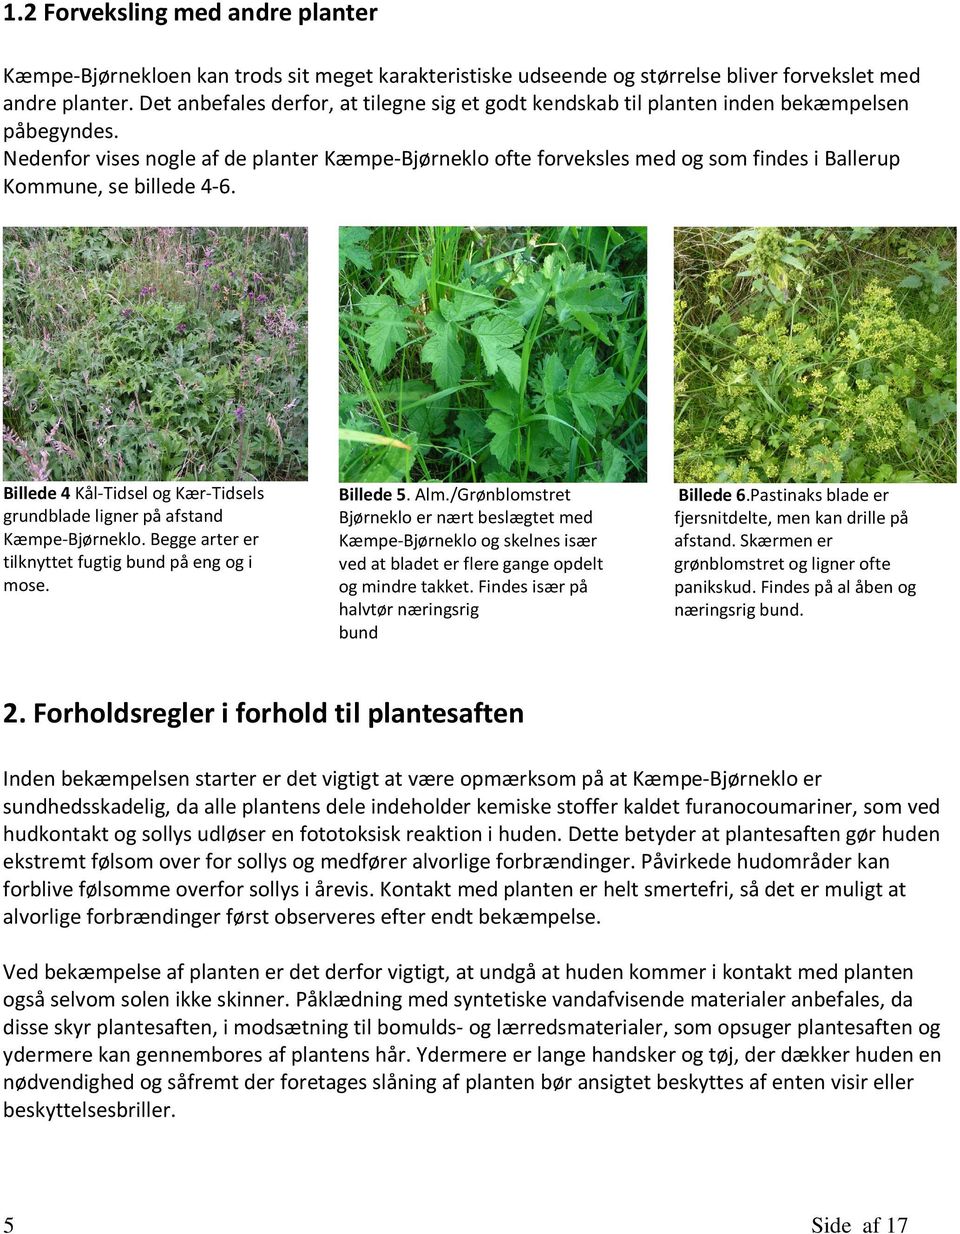 Nedenfor vises nogle af de planter Kæmpe-Bjørneklo ofte forveksles med og som findes i Ballerup Kommune, se billede 4-6.